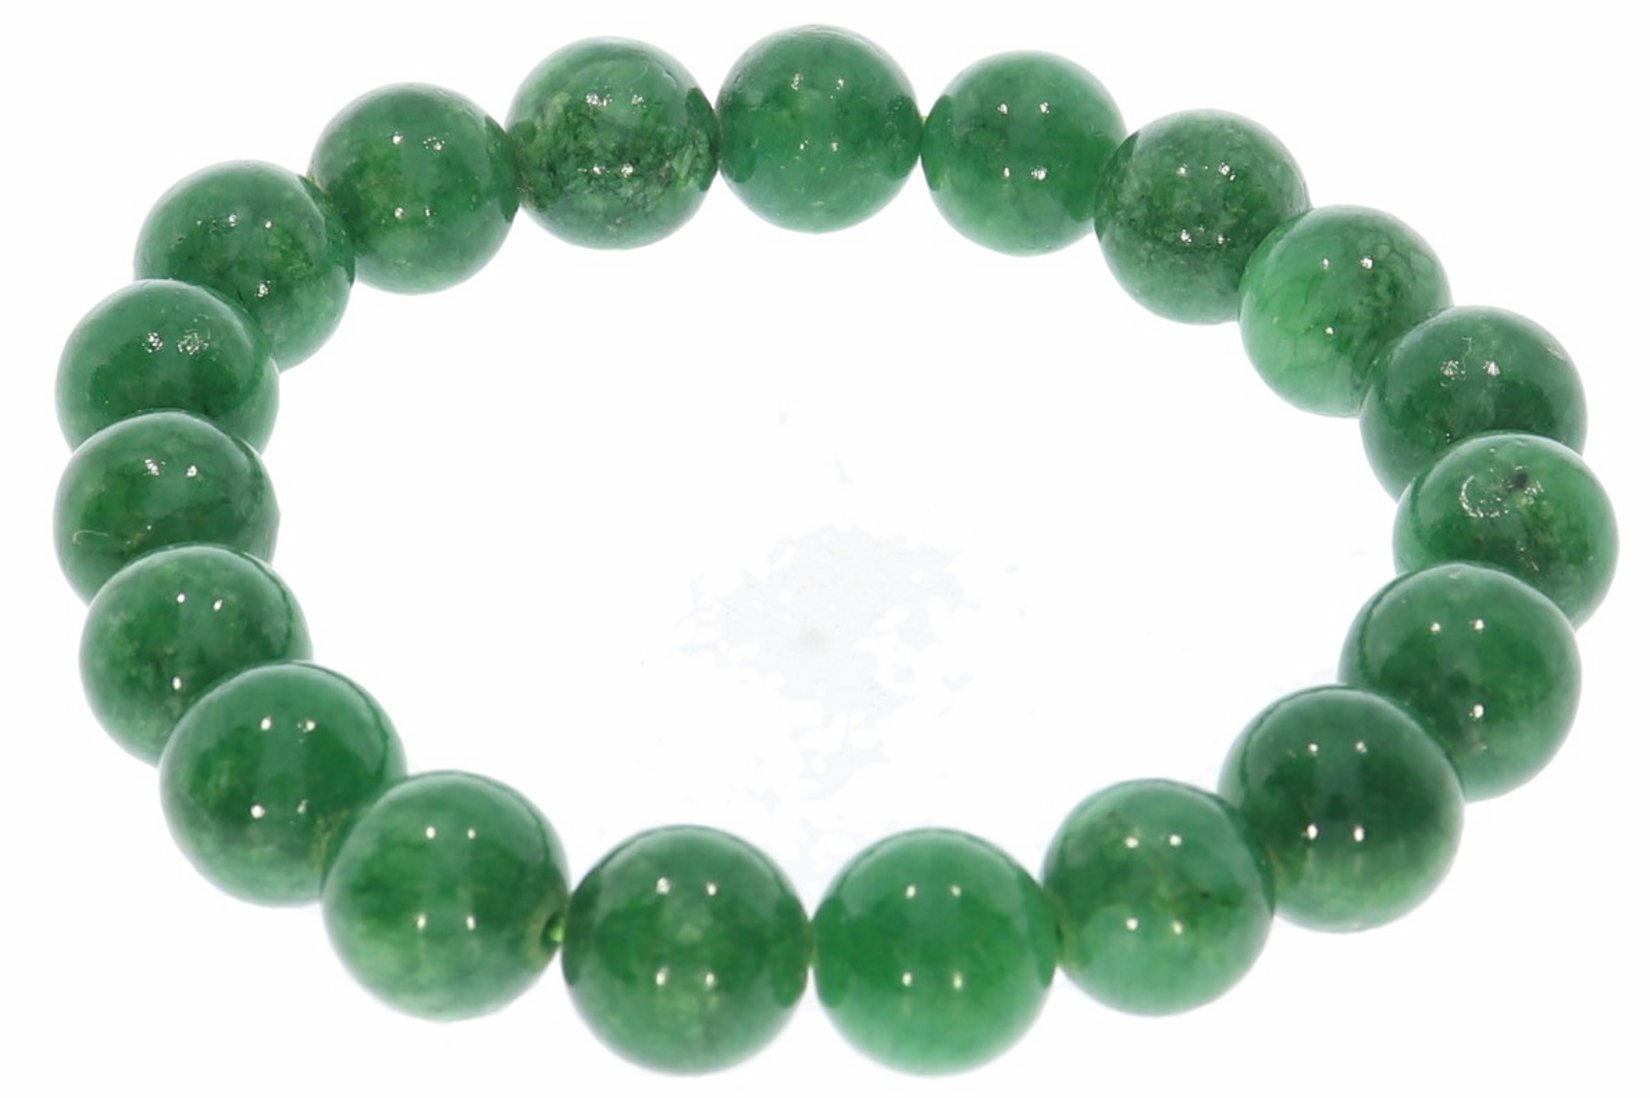 Mashan Jade grün 10mm Kugel Schmuck Edelstein Armband 10S225 - individuelle Größe